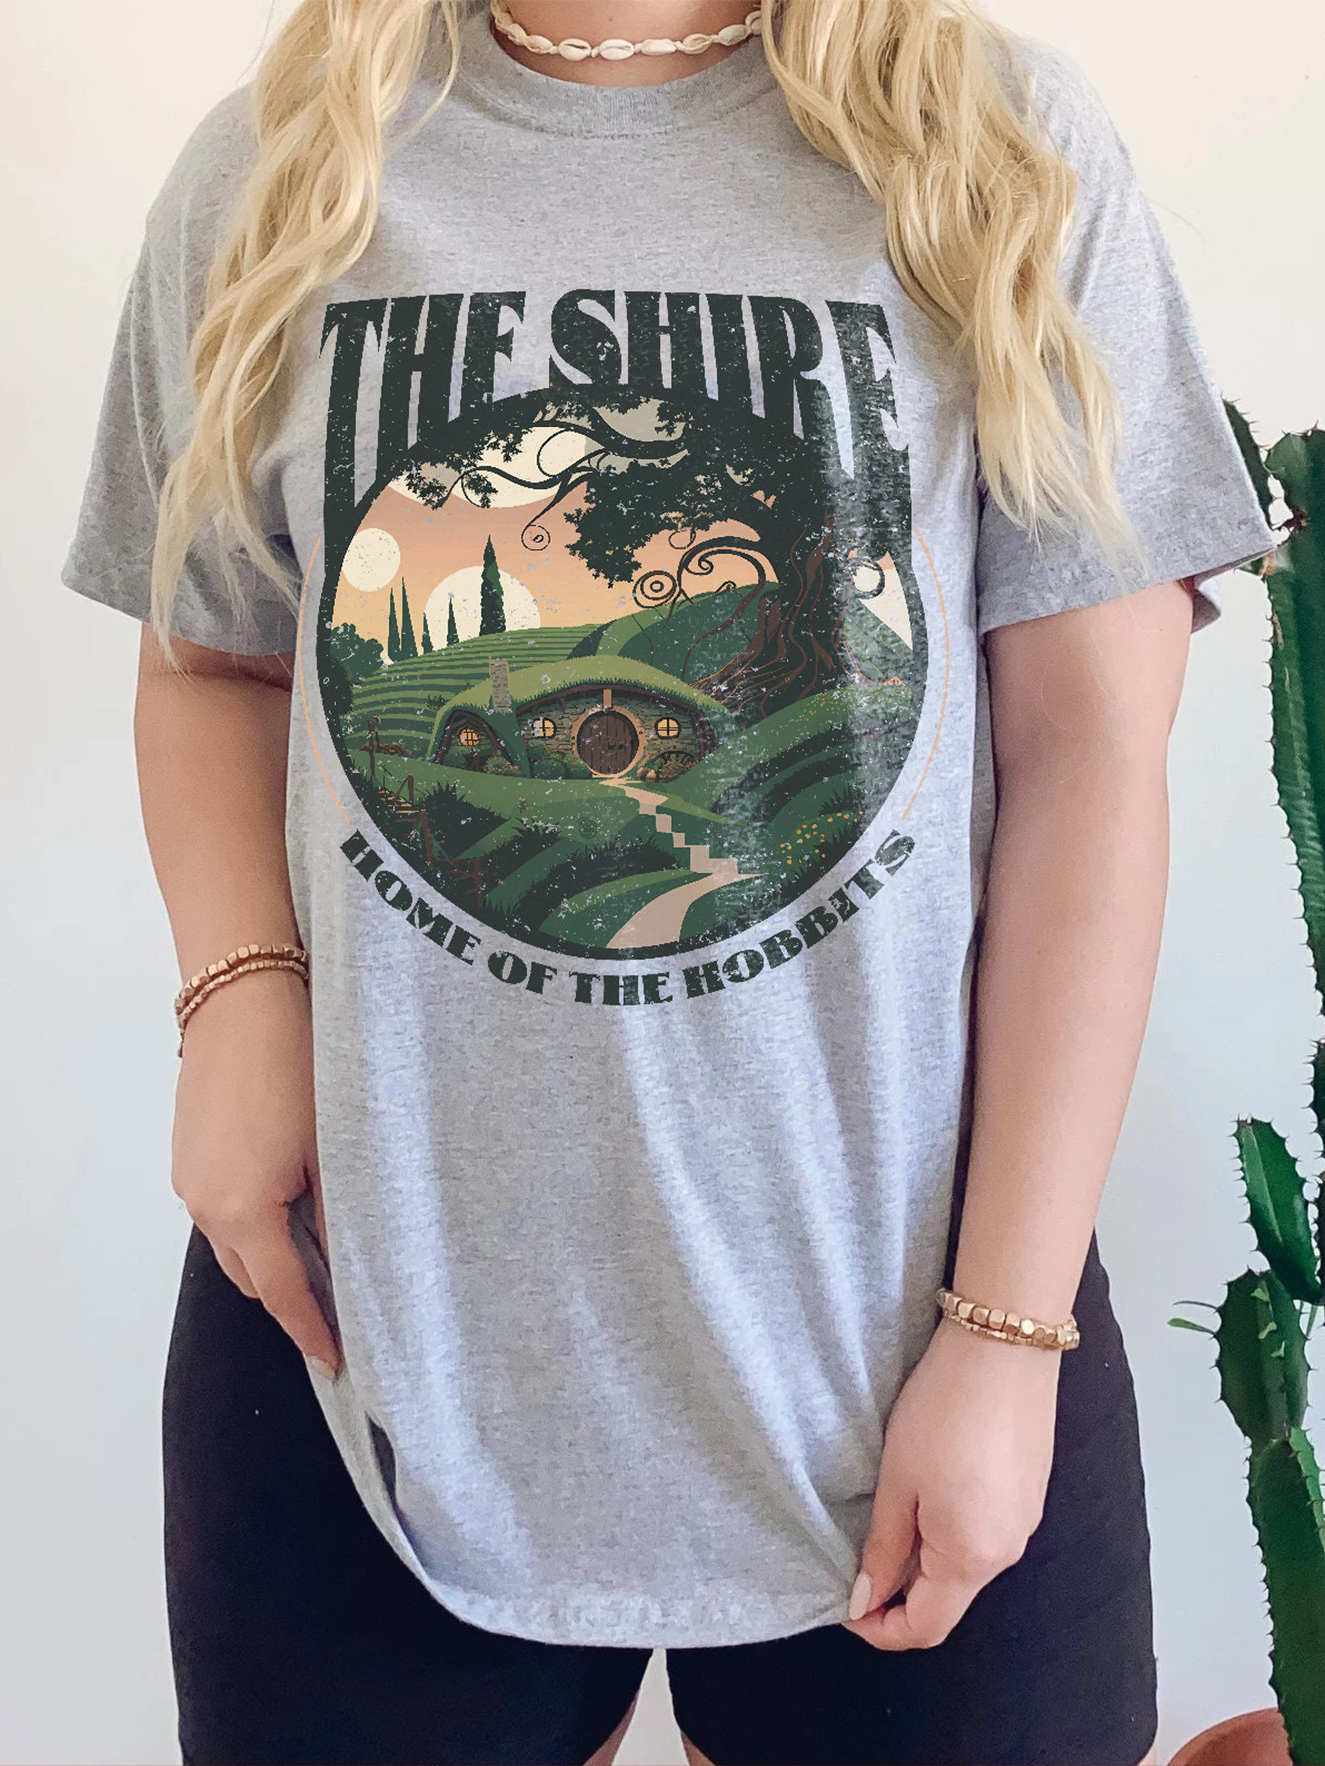 Lord Of The Rings Tshirt, LOTR Fan Tshirt, Legolas Tshirt,The Shire Shirt Lixishop 